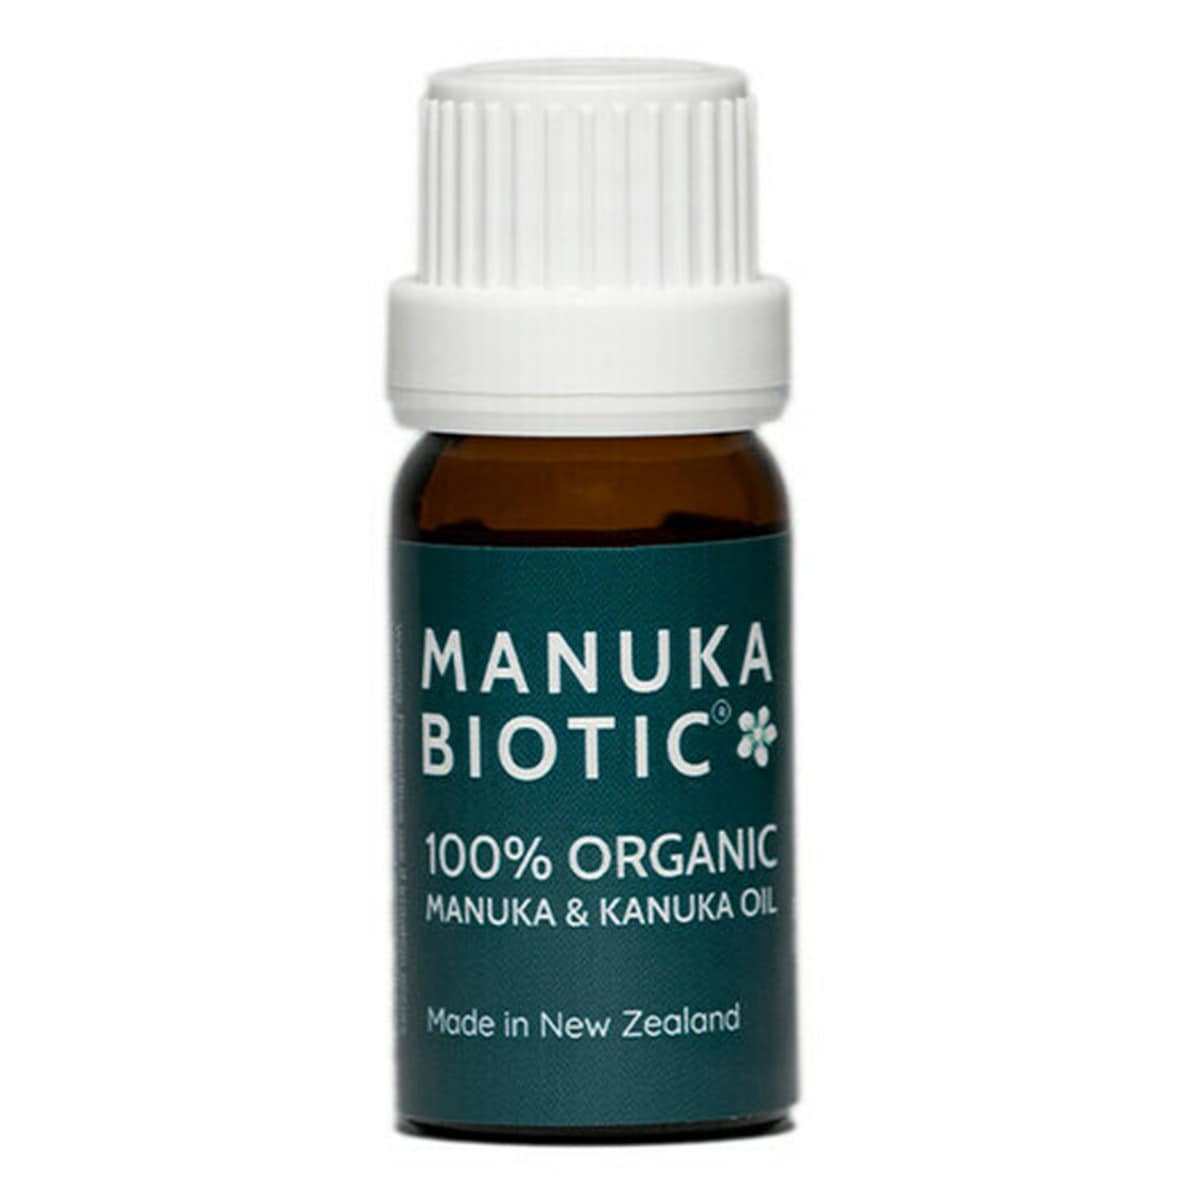 Manuka Biotic Organic Manuka & Kanuka Oil 10ml